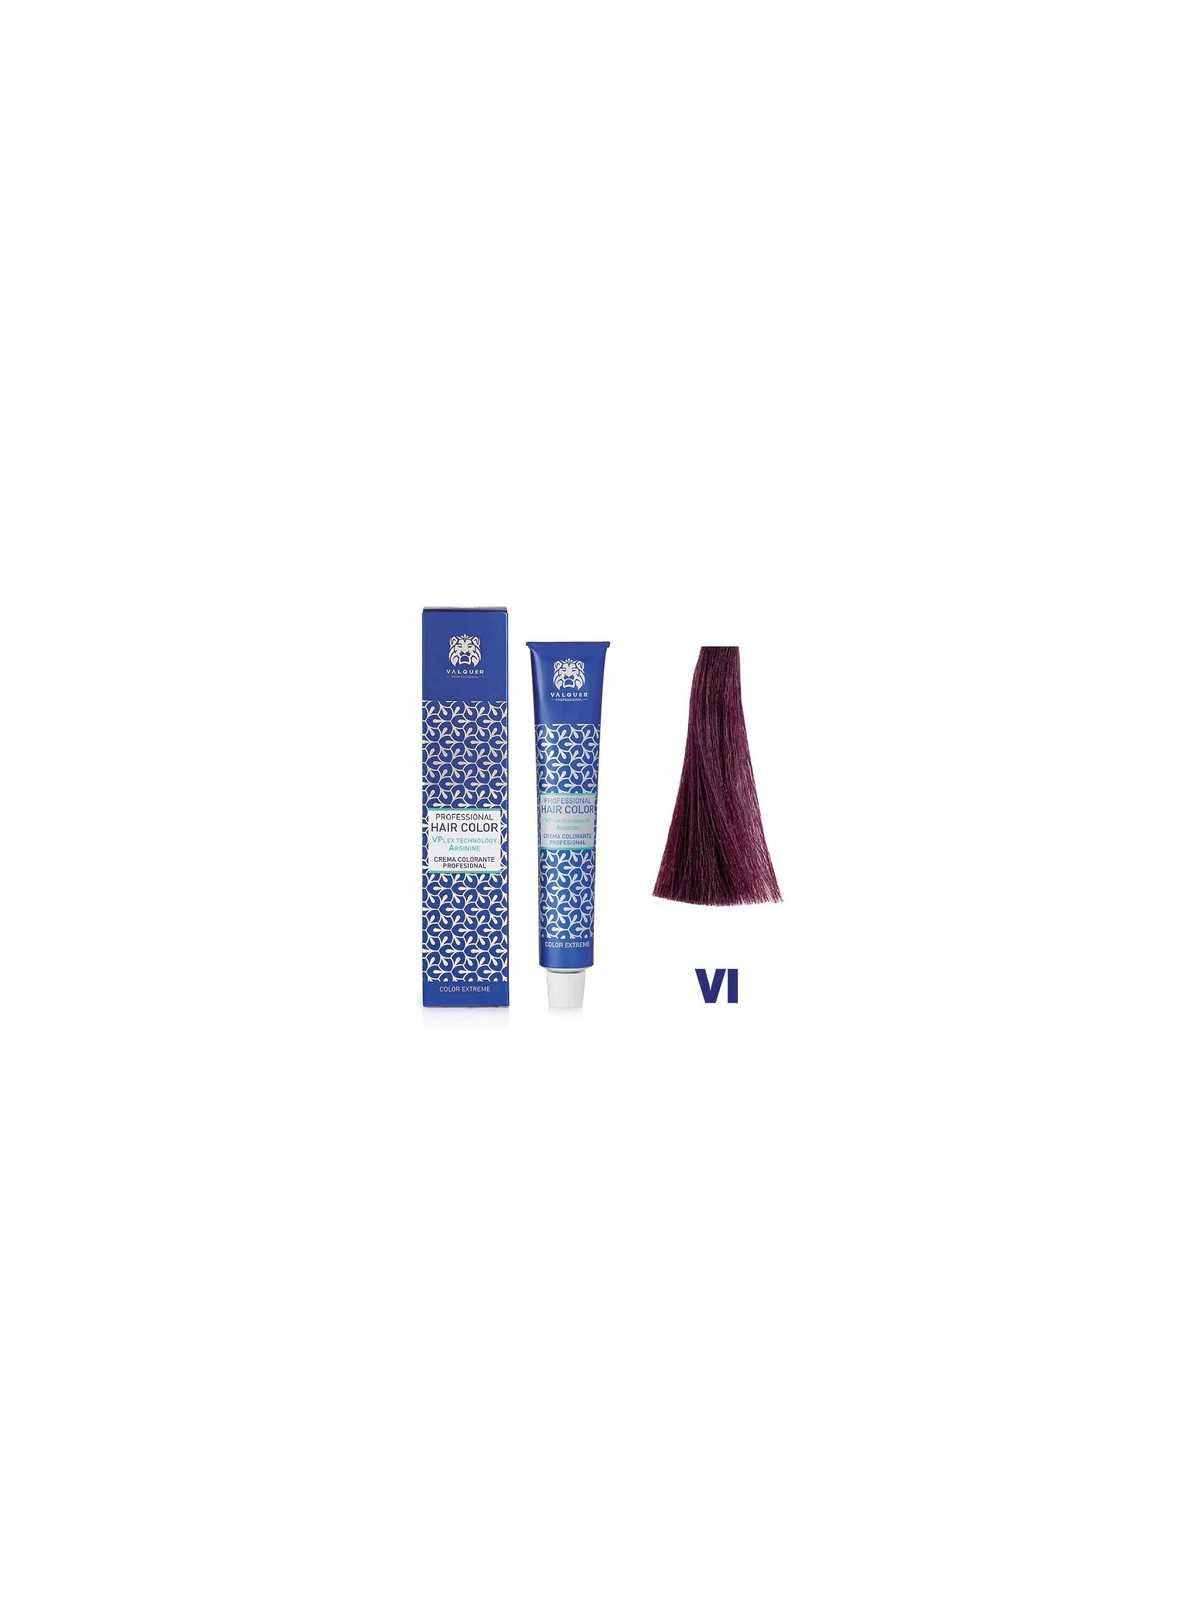 Comprar Crema Colorante Vplex Vi Violeta - 60 Ml. Valquer en Inicio por sólo 5,60 € o un precio específico de 5,60 € en Thalie Care